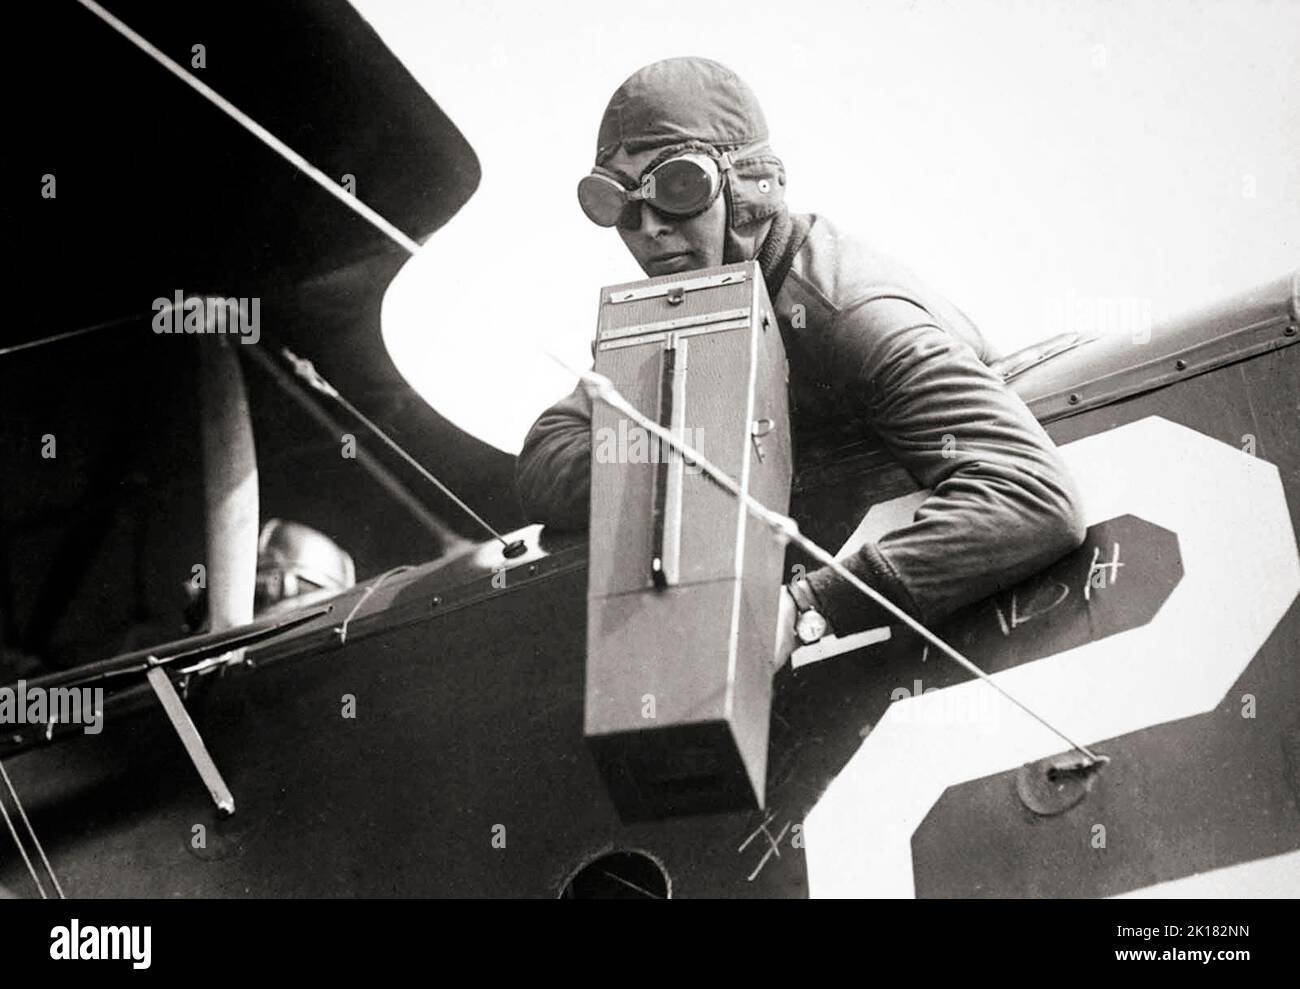 Un fotografo aereo con una fotocamera aerea Graflex Model, ca. 1917-18. La grande telecamera rivestita in pelle con corpo in legno era una delle telecamere aeree pionieristiche, ampiamente utilizzate dal corpo dell'esercito degli Stati Uniti. Attivato da un grilletto a pistola, l'otturatore del piano focale si è attivato quando le due persiane protettive sulla parte anteriore della fotocamera si sono aperte. Un formato 4x5' con retro Graflex significava supporti per piastre standard a due lati, oltre a un caricatore per sacchetti da 12 piastre. Foto Stock